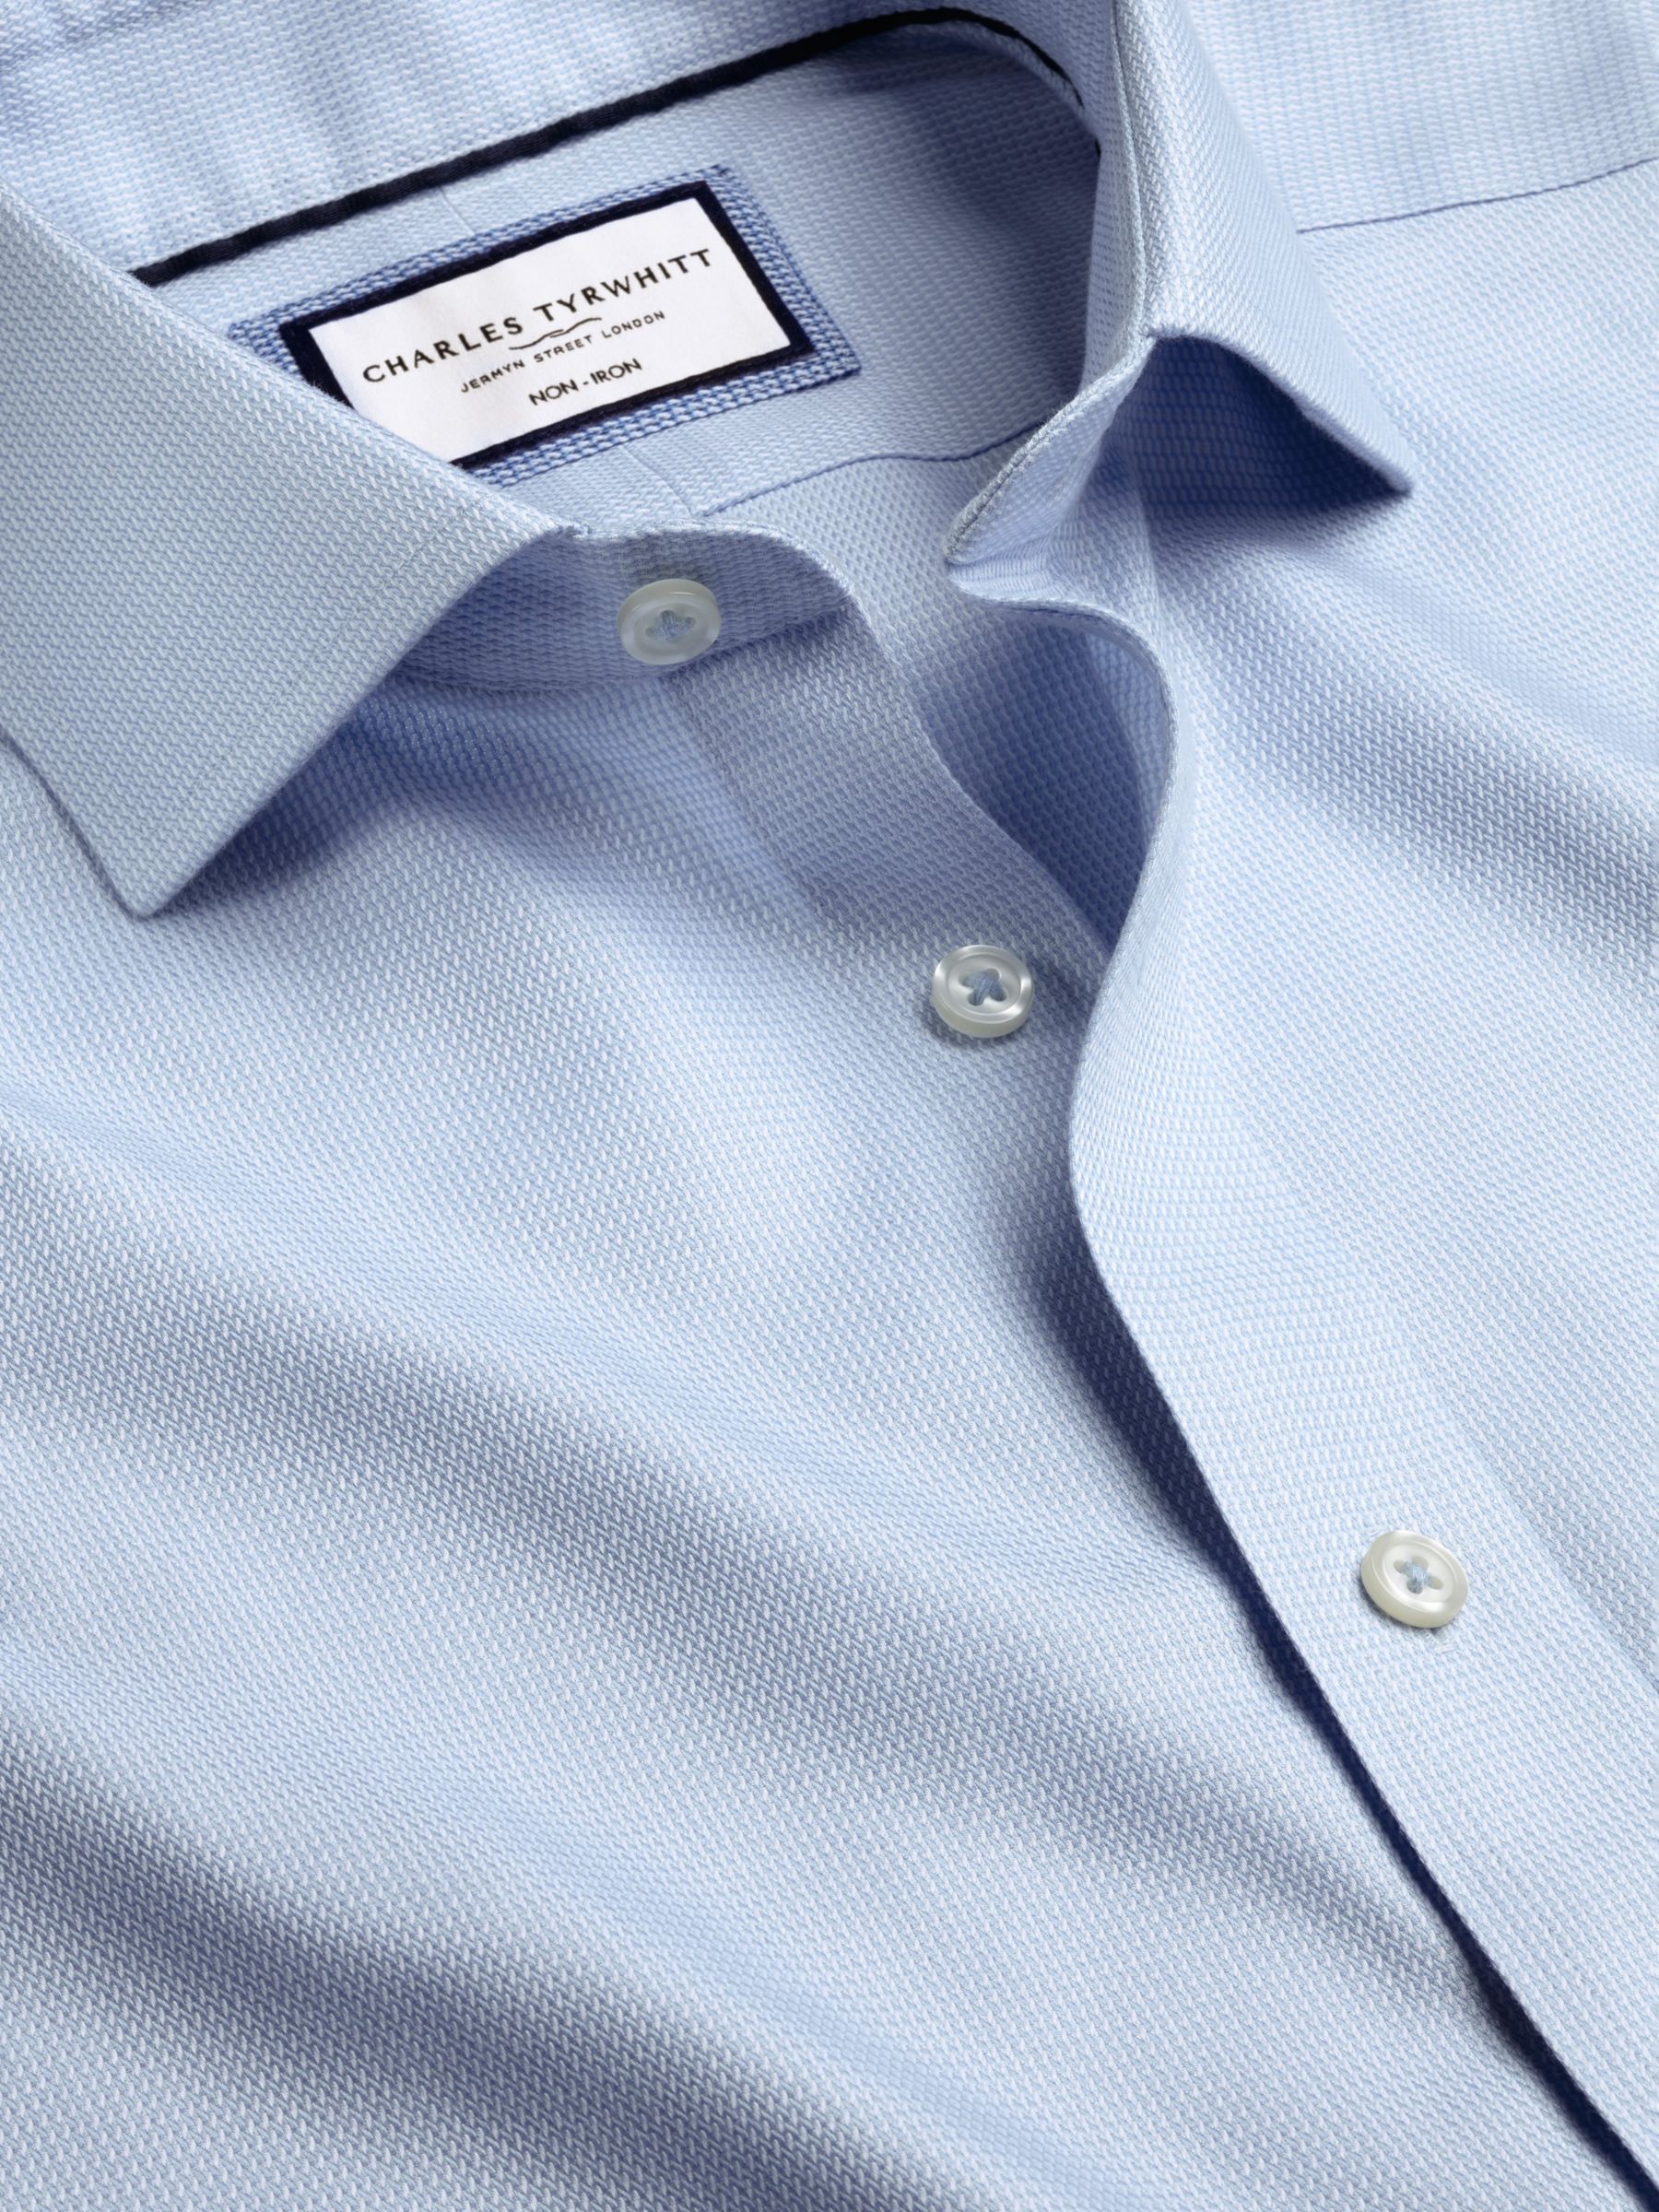 Charles Tyrwhitt Non-Iron Mayfair Textured Dobby Weave Shirt, Light Blue, 14.5